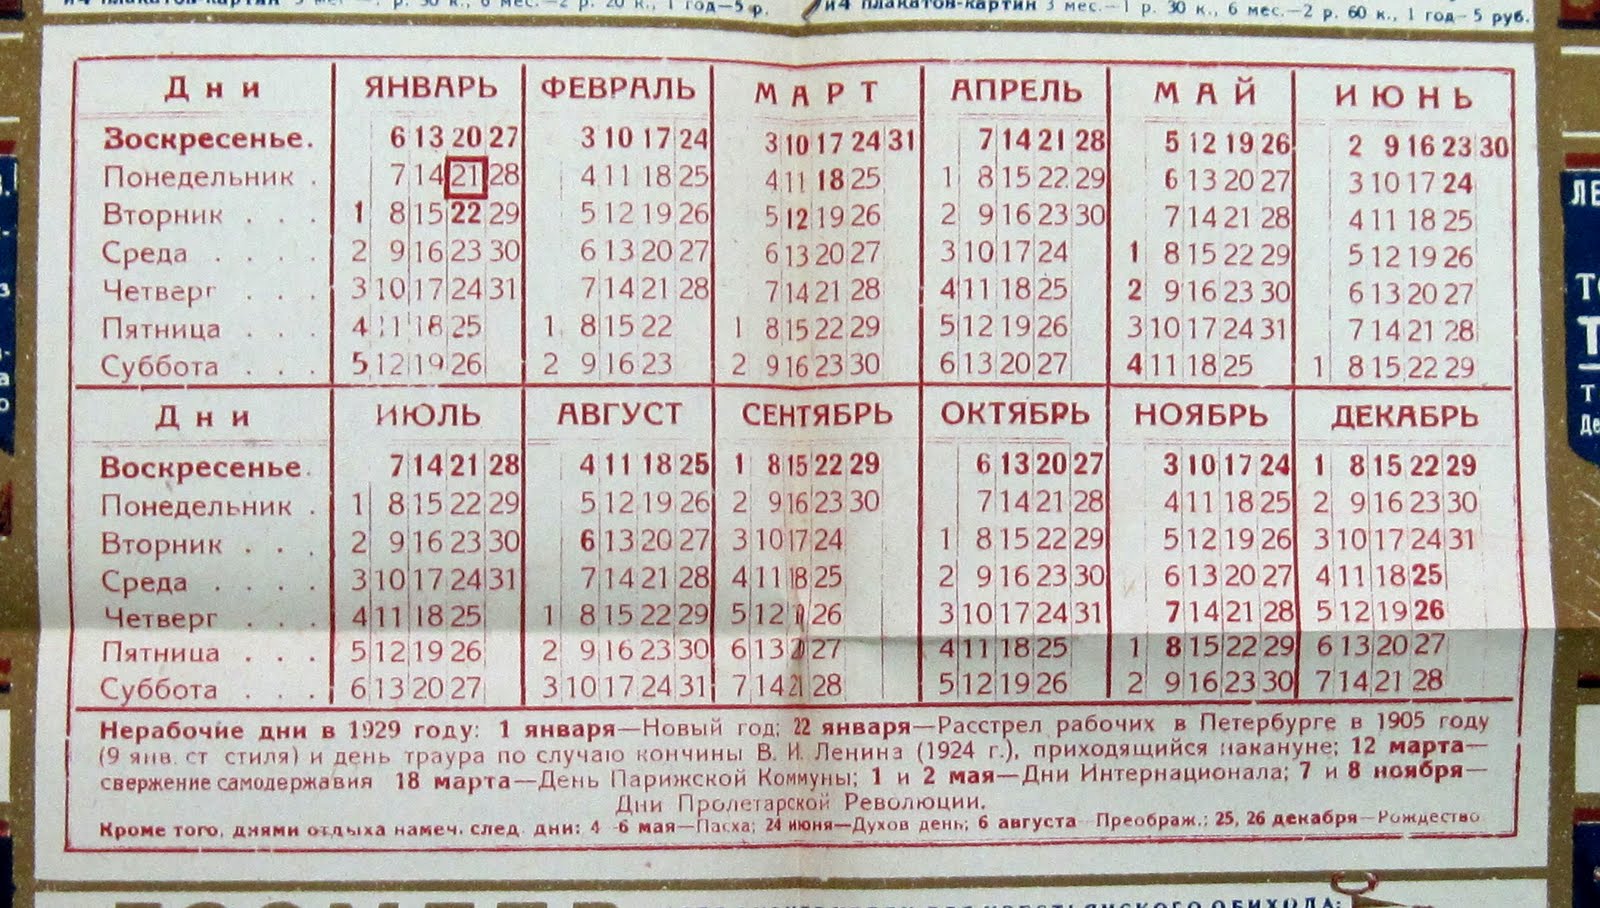 Пасха в 1991 году. Календарь праздников 1929 года. Календарь советских праздников. Табель календарь 1929 года. Табель календарь на 1930 год.